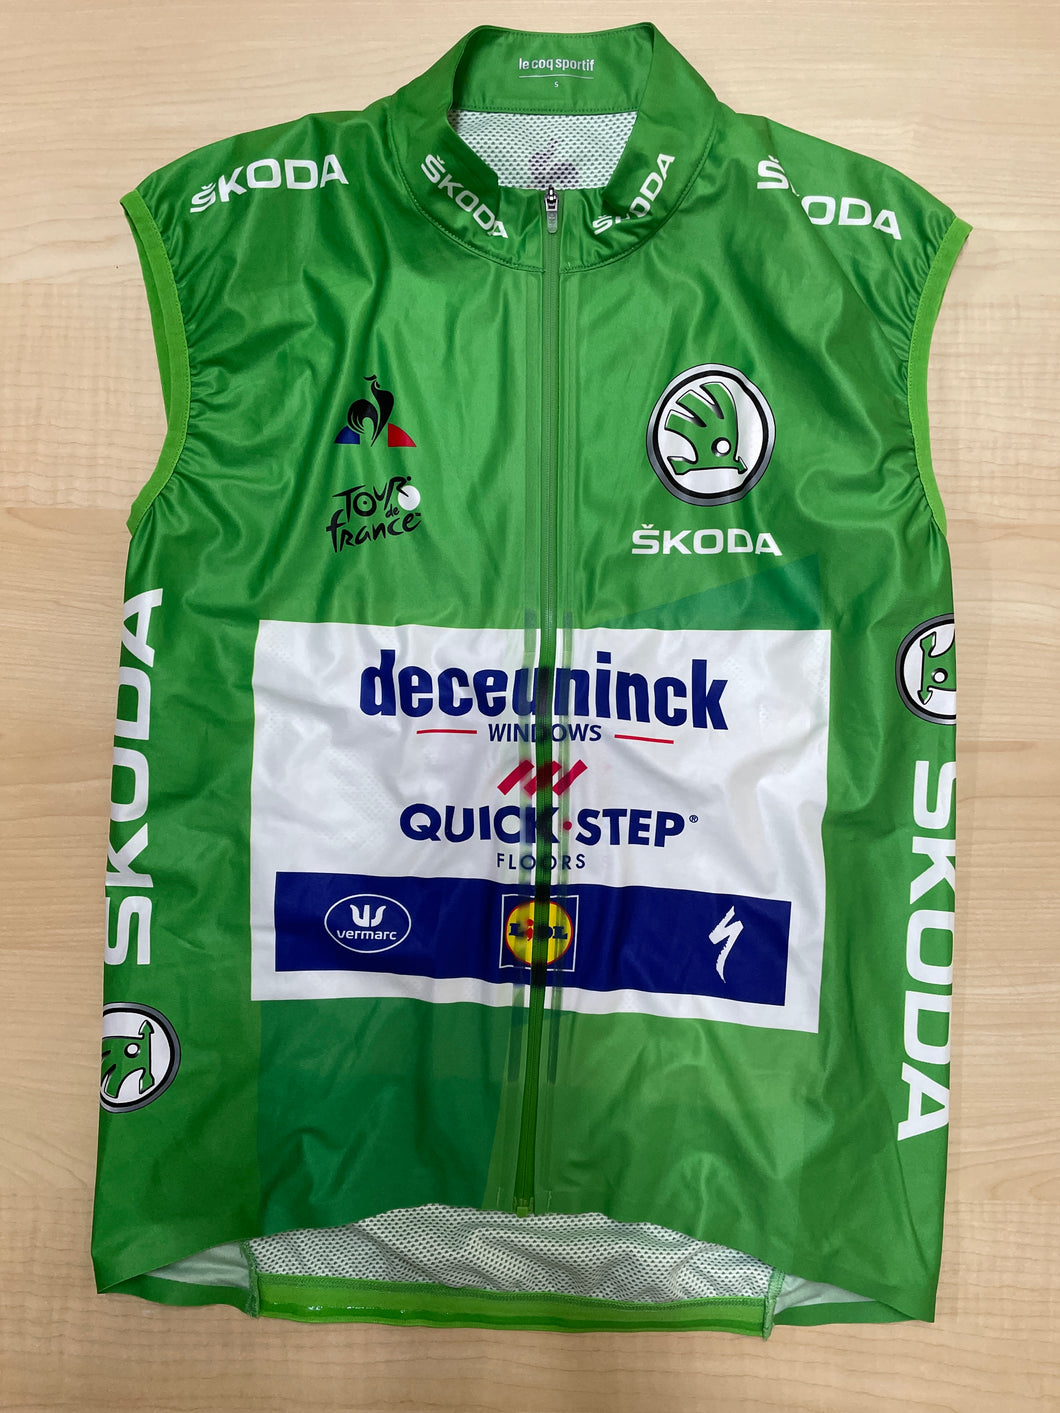 Deceuninck Quickstep | Tour de France 2020 | Green Leader Vest | Sam Bennett | S